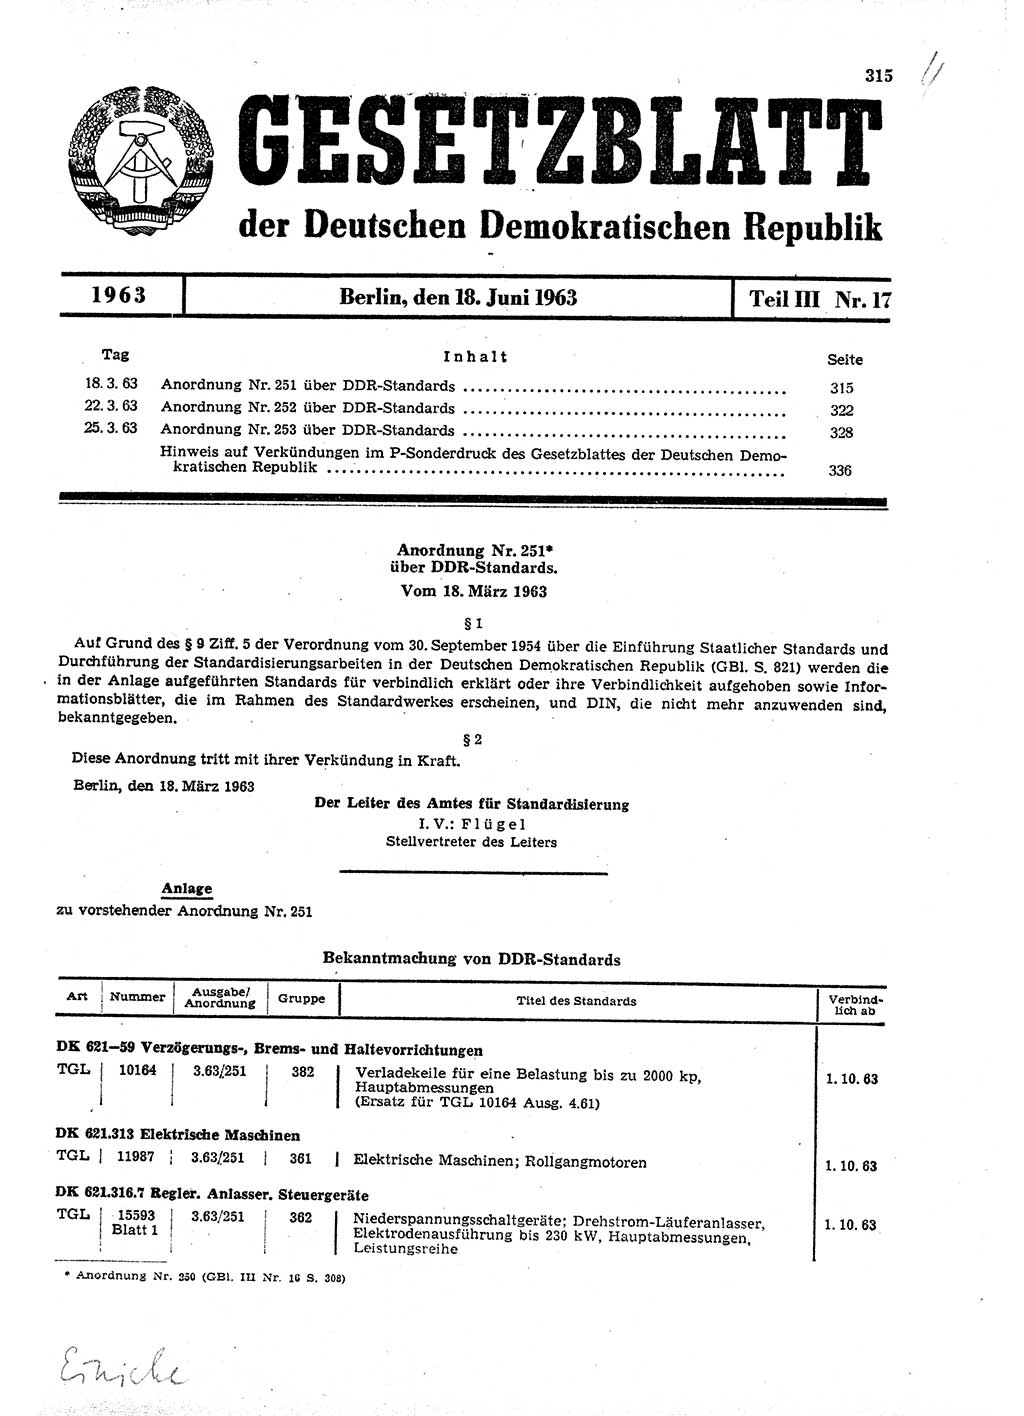 Gesetzblatt (GBl.) der Deutschen Demokratischen Republik (DDR) Teil ⅠⅠⅠ 1963, Seite 315 (GBl. DDR ⅠⅠⅠ 1963, S. 315)